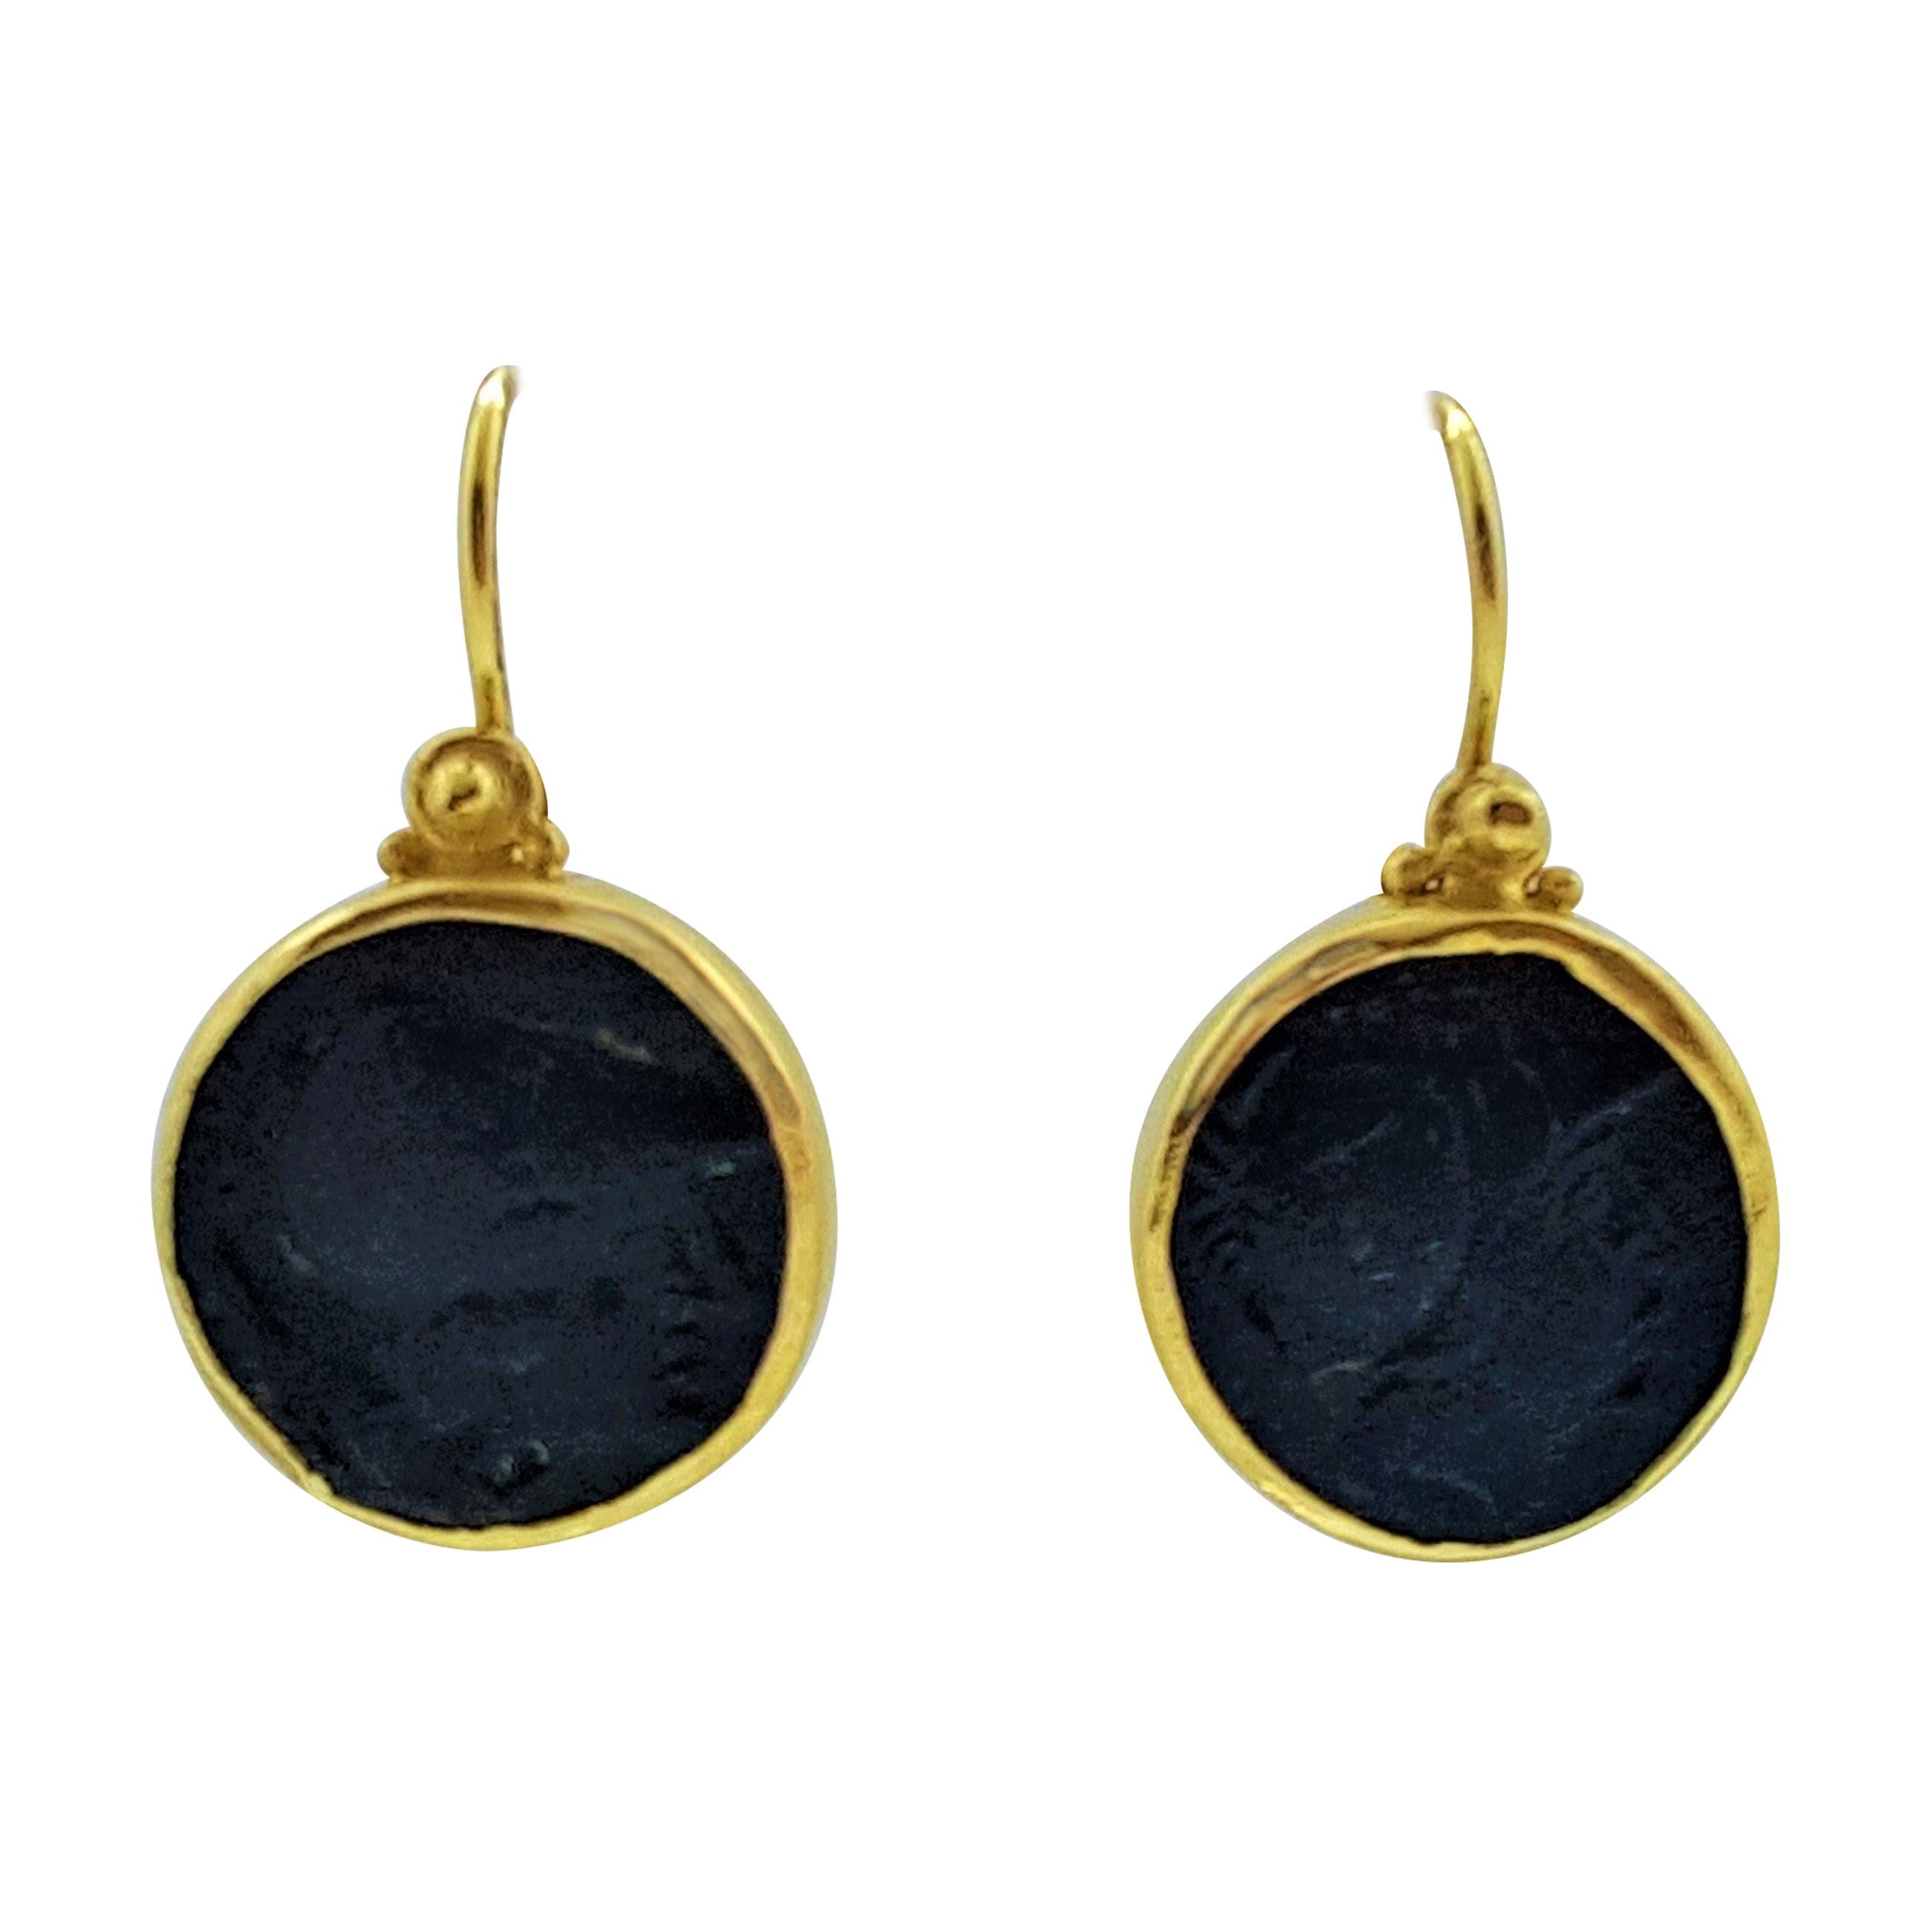 Pendants d'oreilles en or jaune 18 carats de style crochet avec pièce de monnaie à chaton de style ancien, Grèce